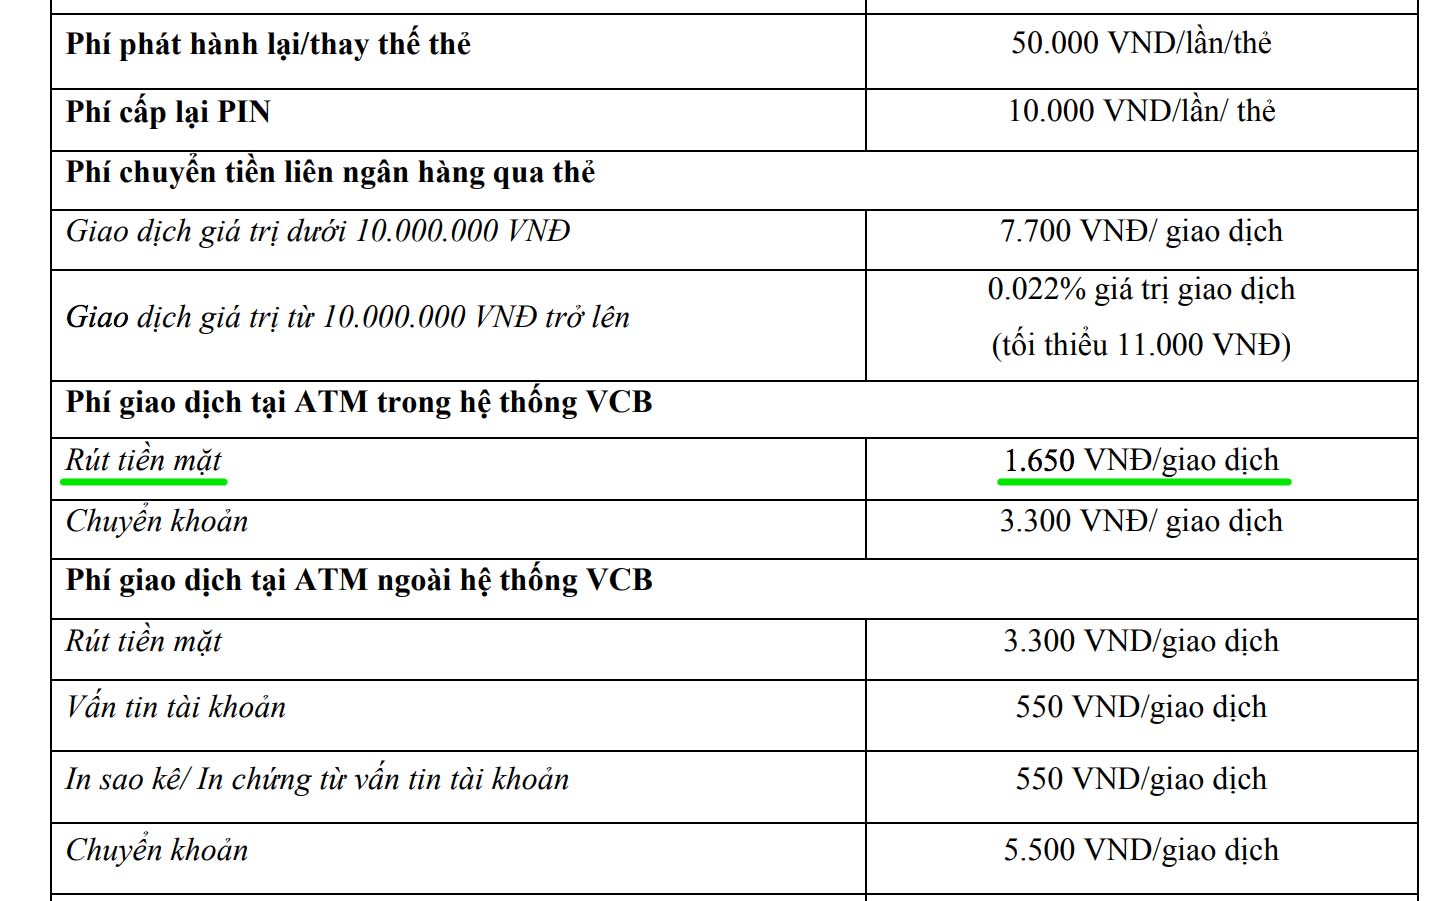 Vietcombank tăng phí rút tiền nội mạng lên 1.650 đồng / lần, áp dụng từ 15/07/2018